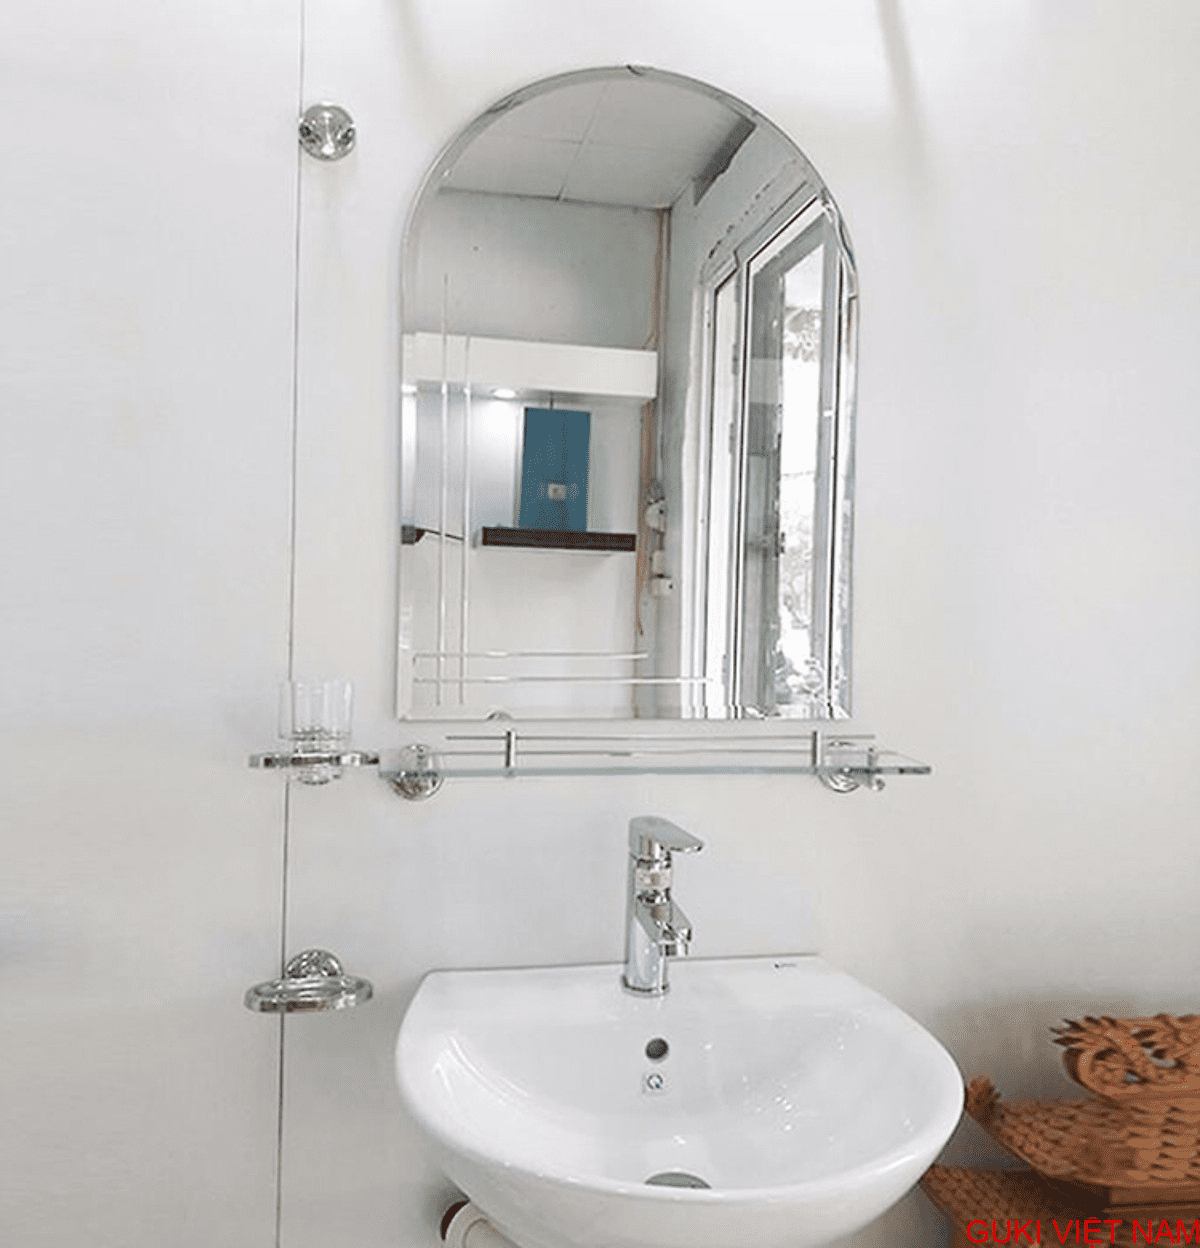 Kệ kính phòng tắm GUKI: Kệ kính phòng tắm GUKI là sự kết hợp hoàn hảo giữa tính thẩm mỹ và tính tiện dụng. Với thiết kế hiện đại và nhiều kệ lưu trữ, kệ kính GUKI sẽ giúp không gian tắm của bạn trở nên gọn gàng, hiện đại và vừa ý cho mọi thành viên trong gia đình.